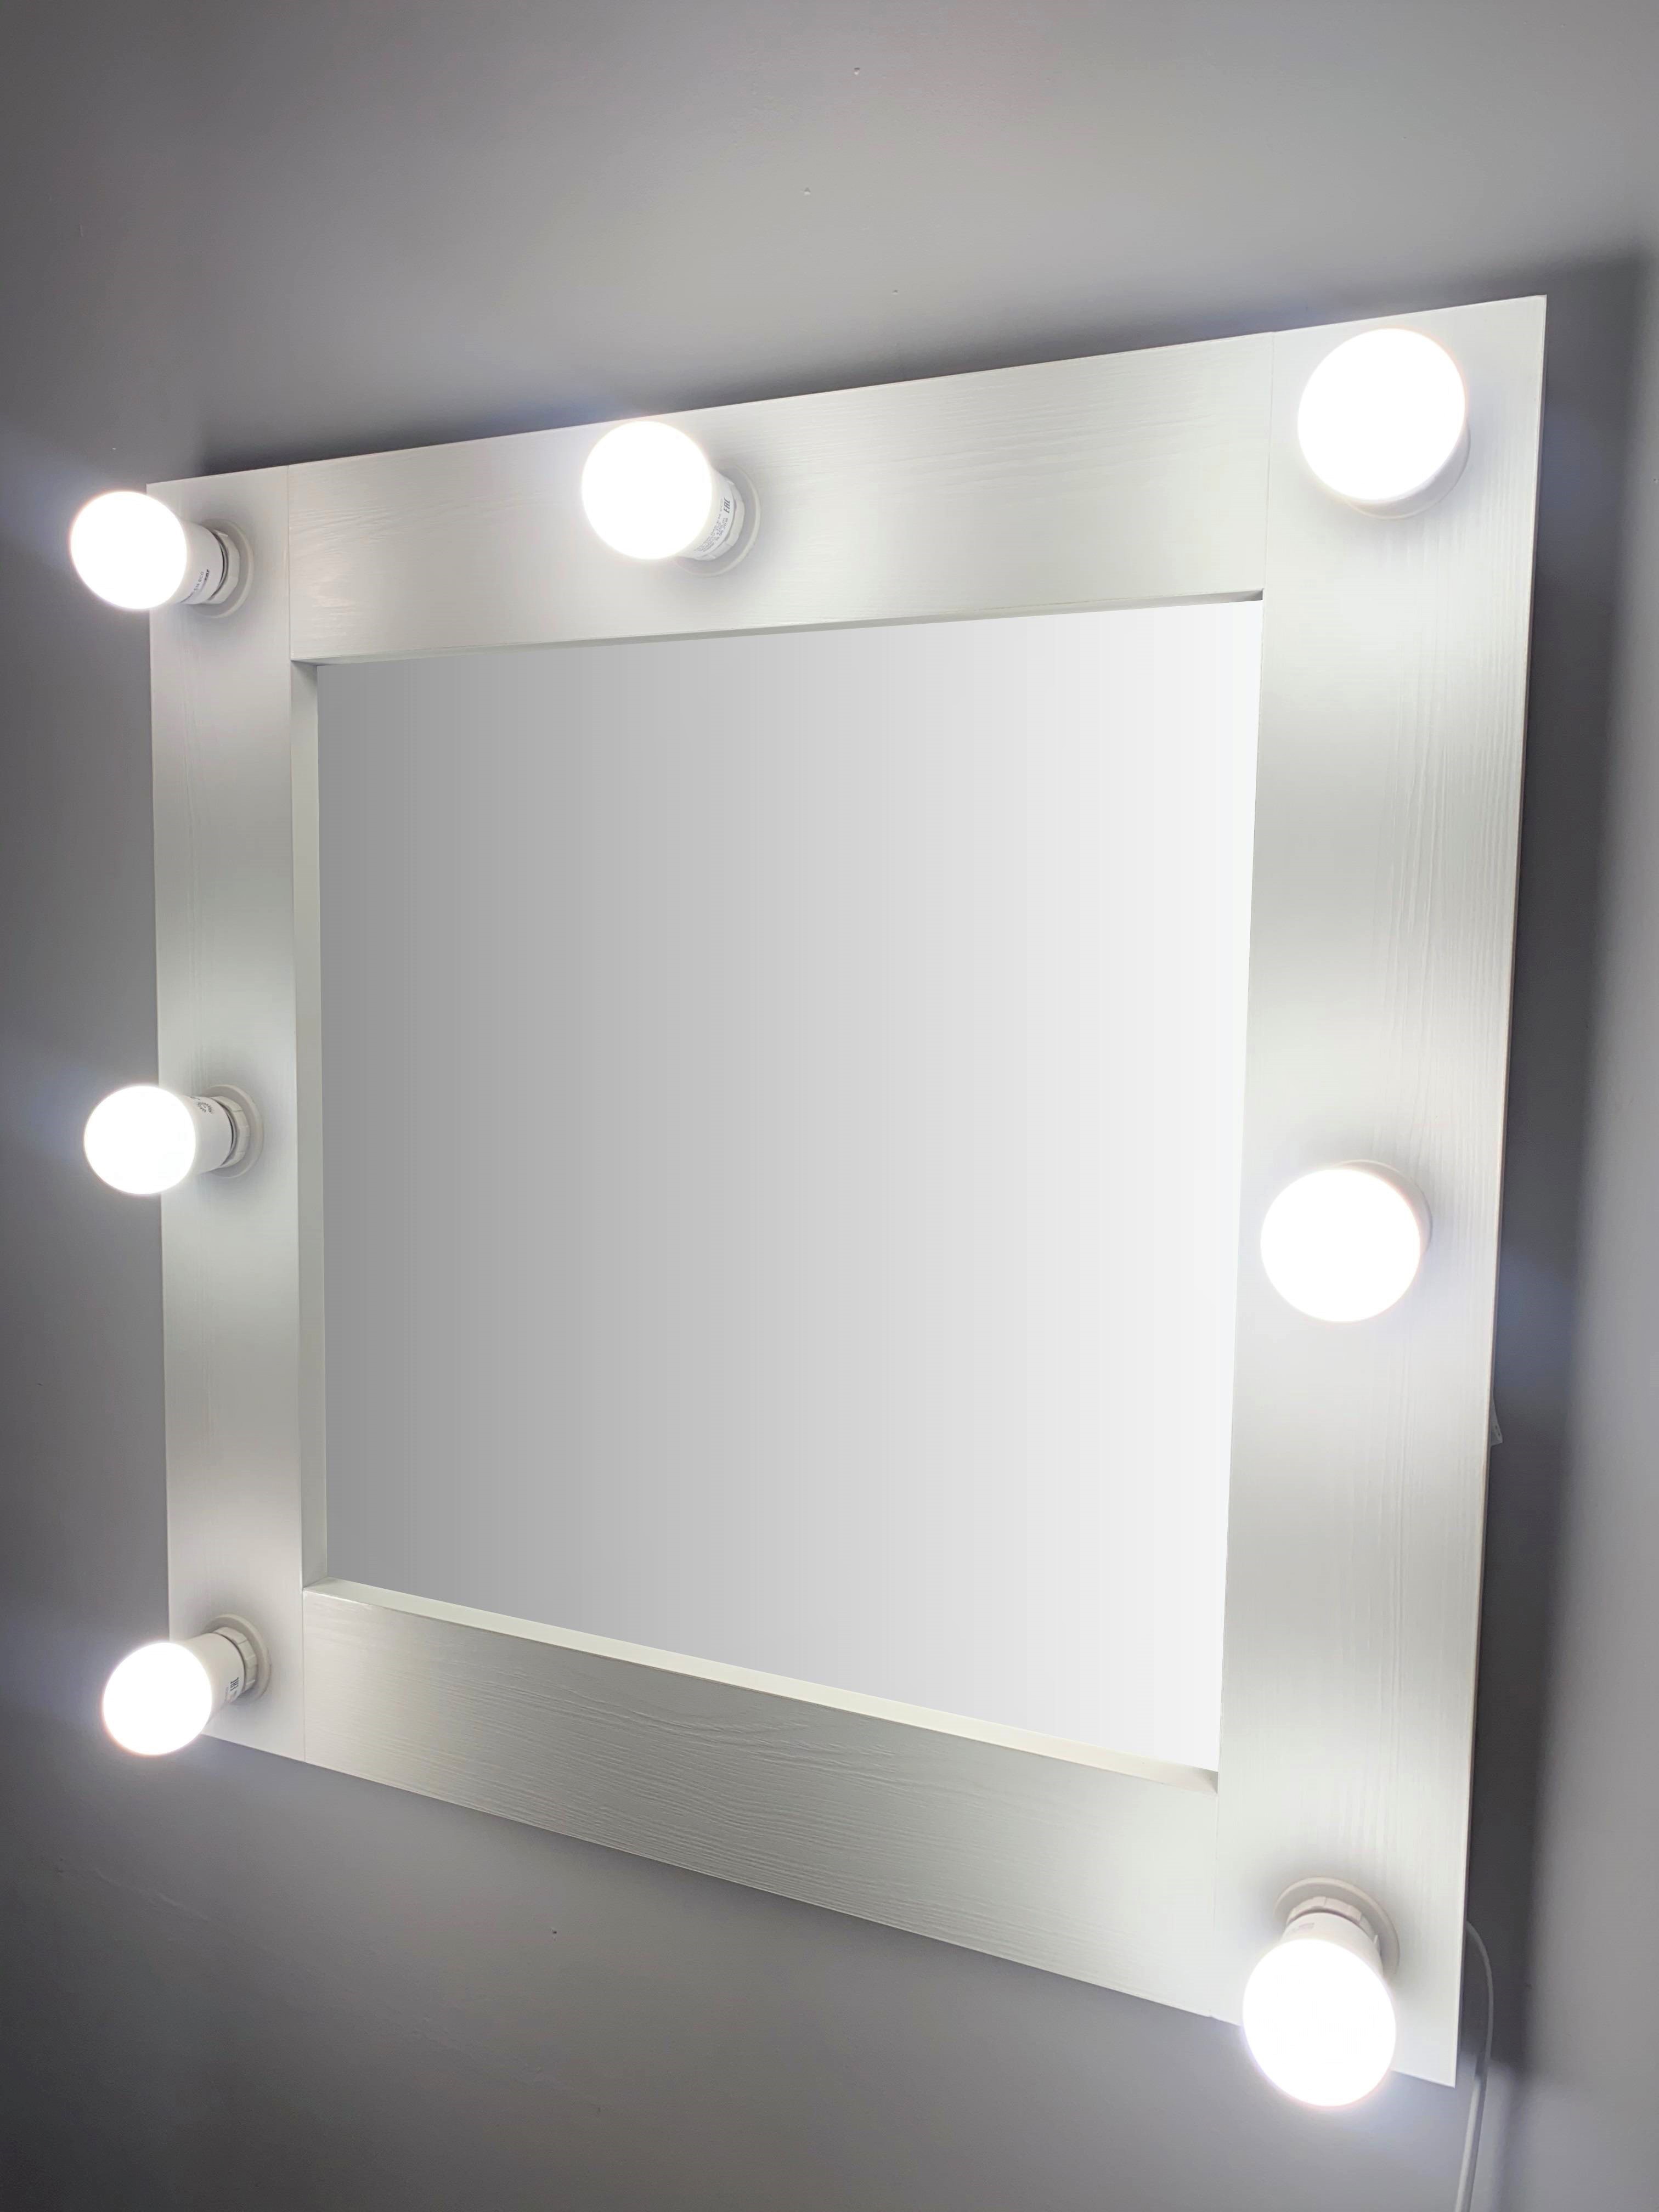 91053076 Гримерное зеркало с лампочками 57x57 см цвет белый STLM-0458986 BEAUTYUP